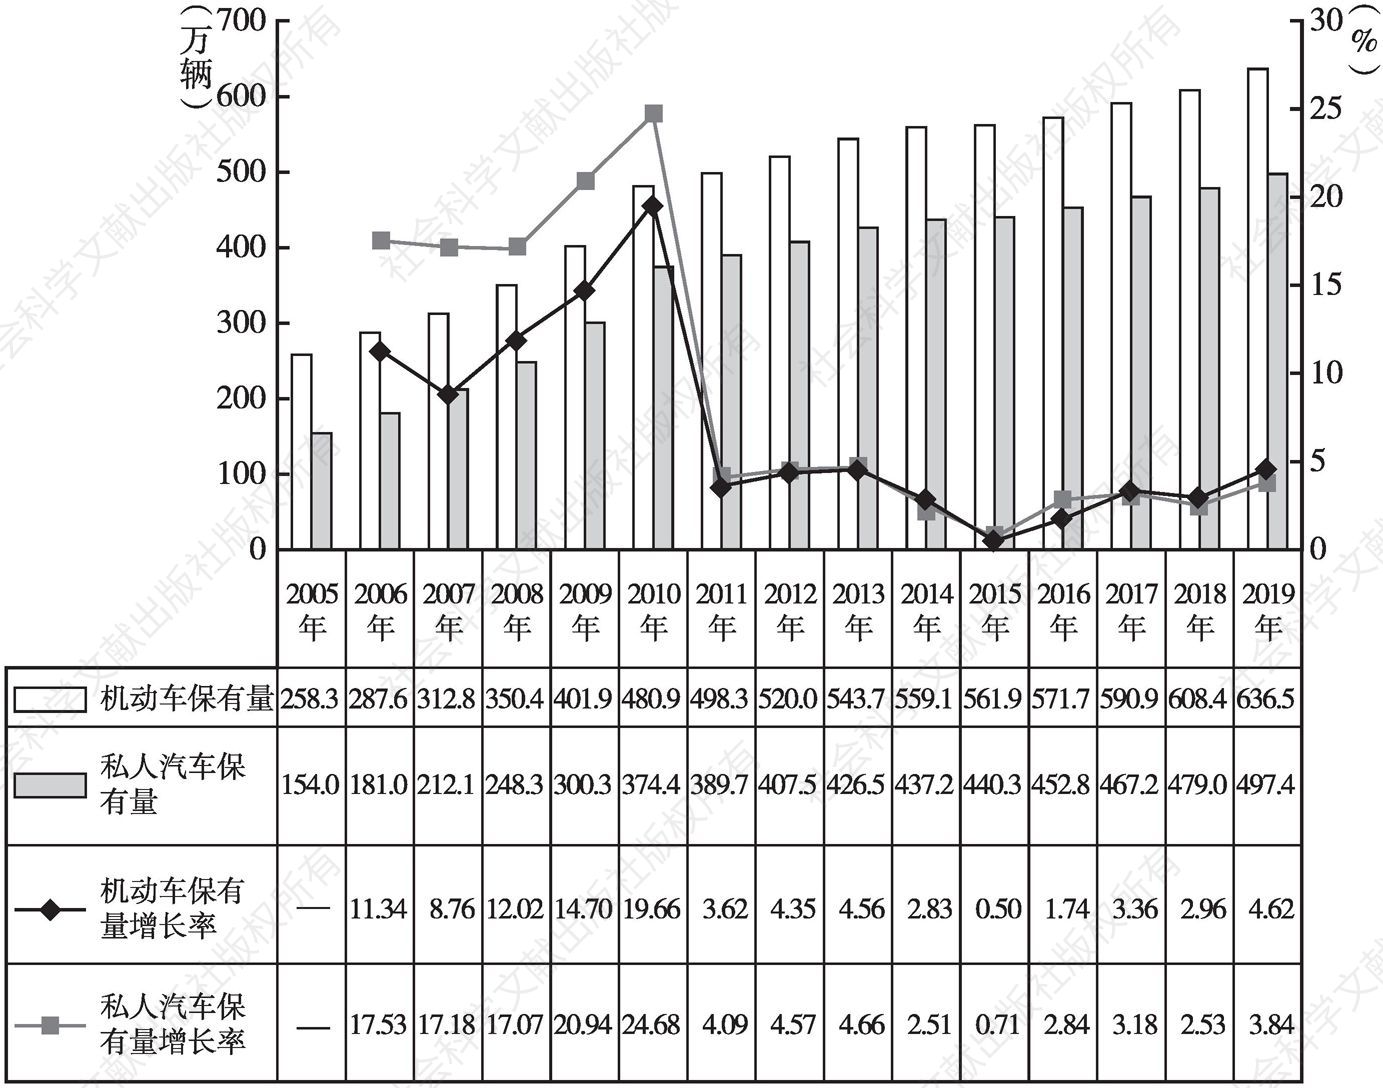 图1 2005～2019年北京市机动车与私人汽车保有量及增长率情况